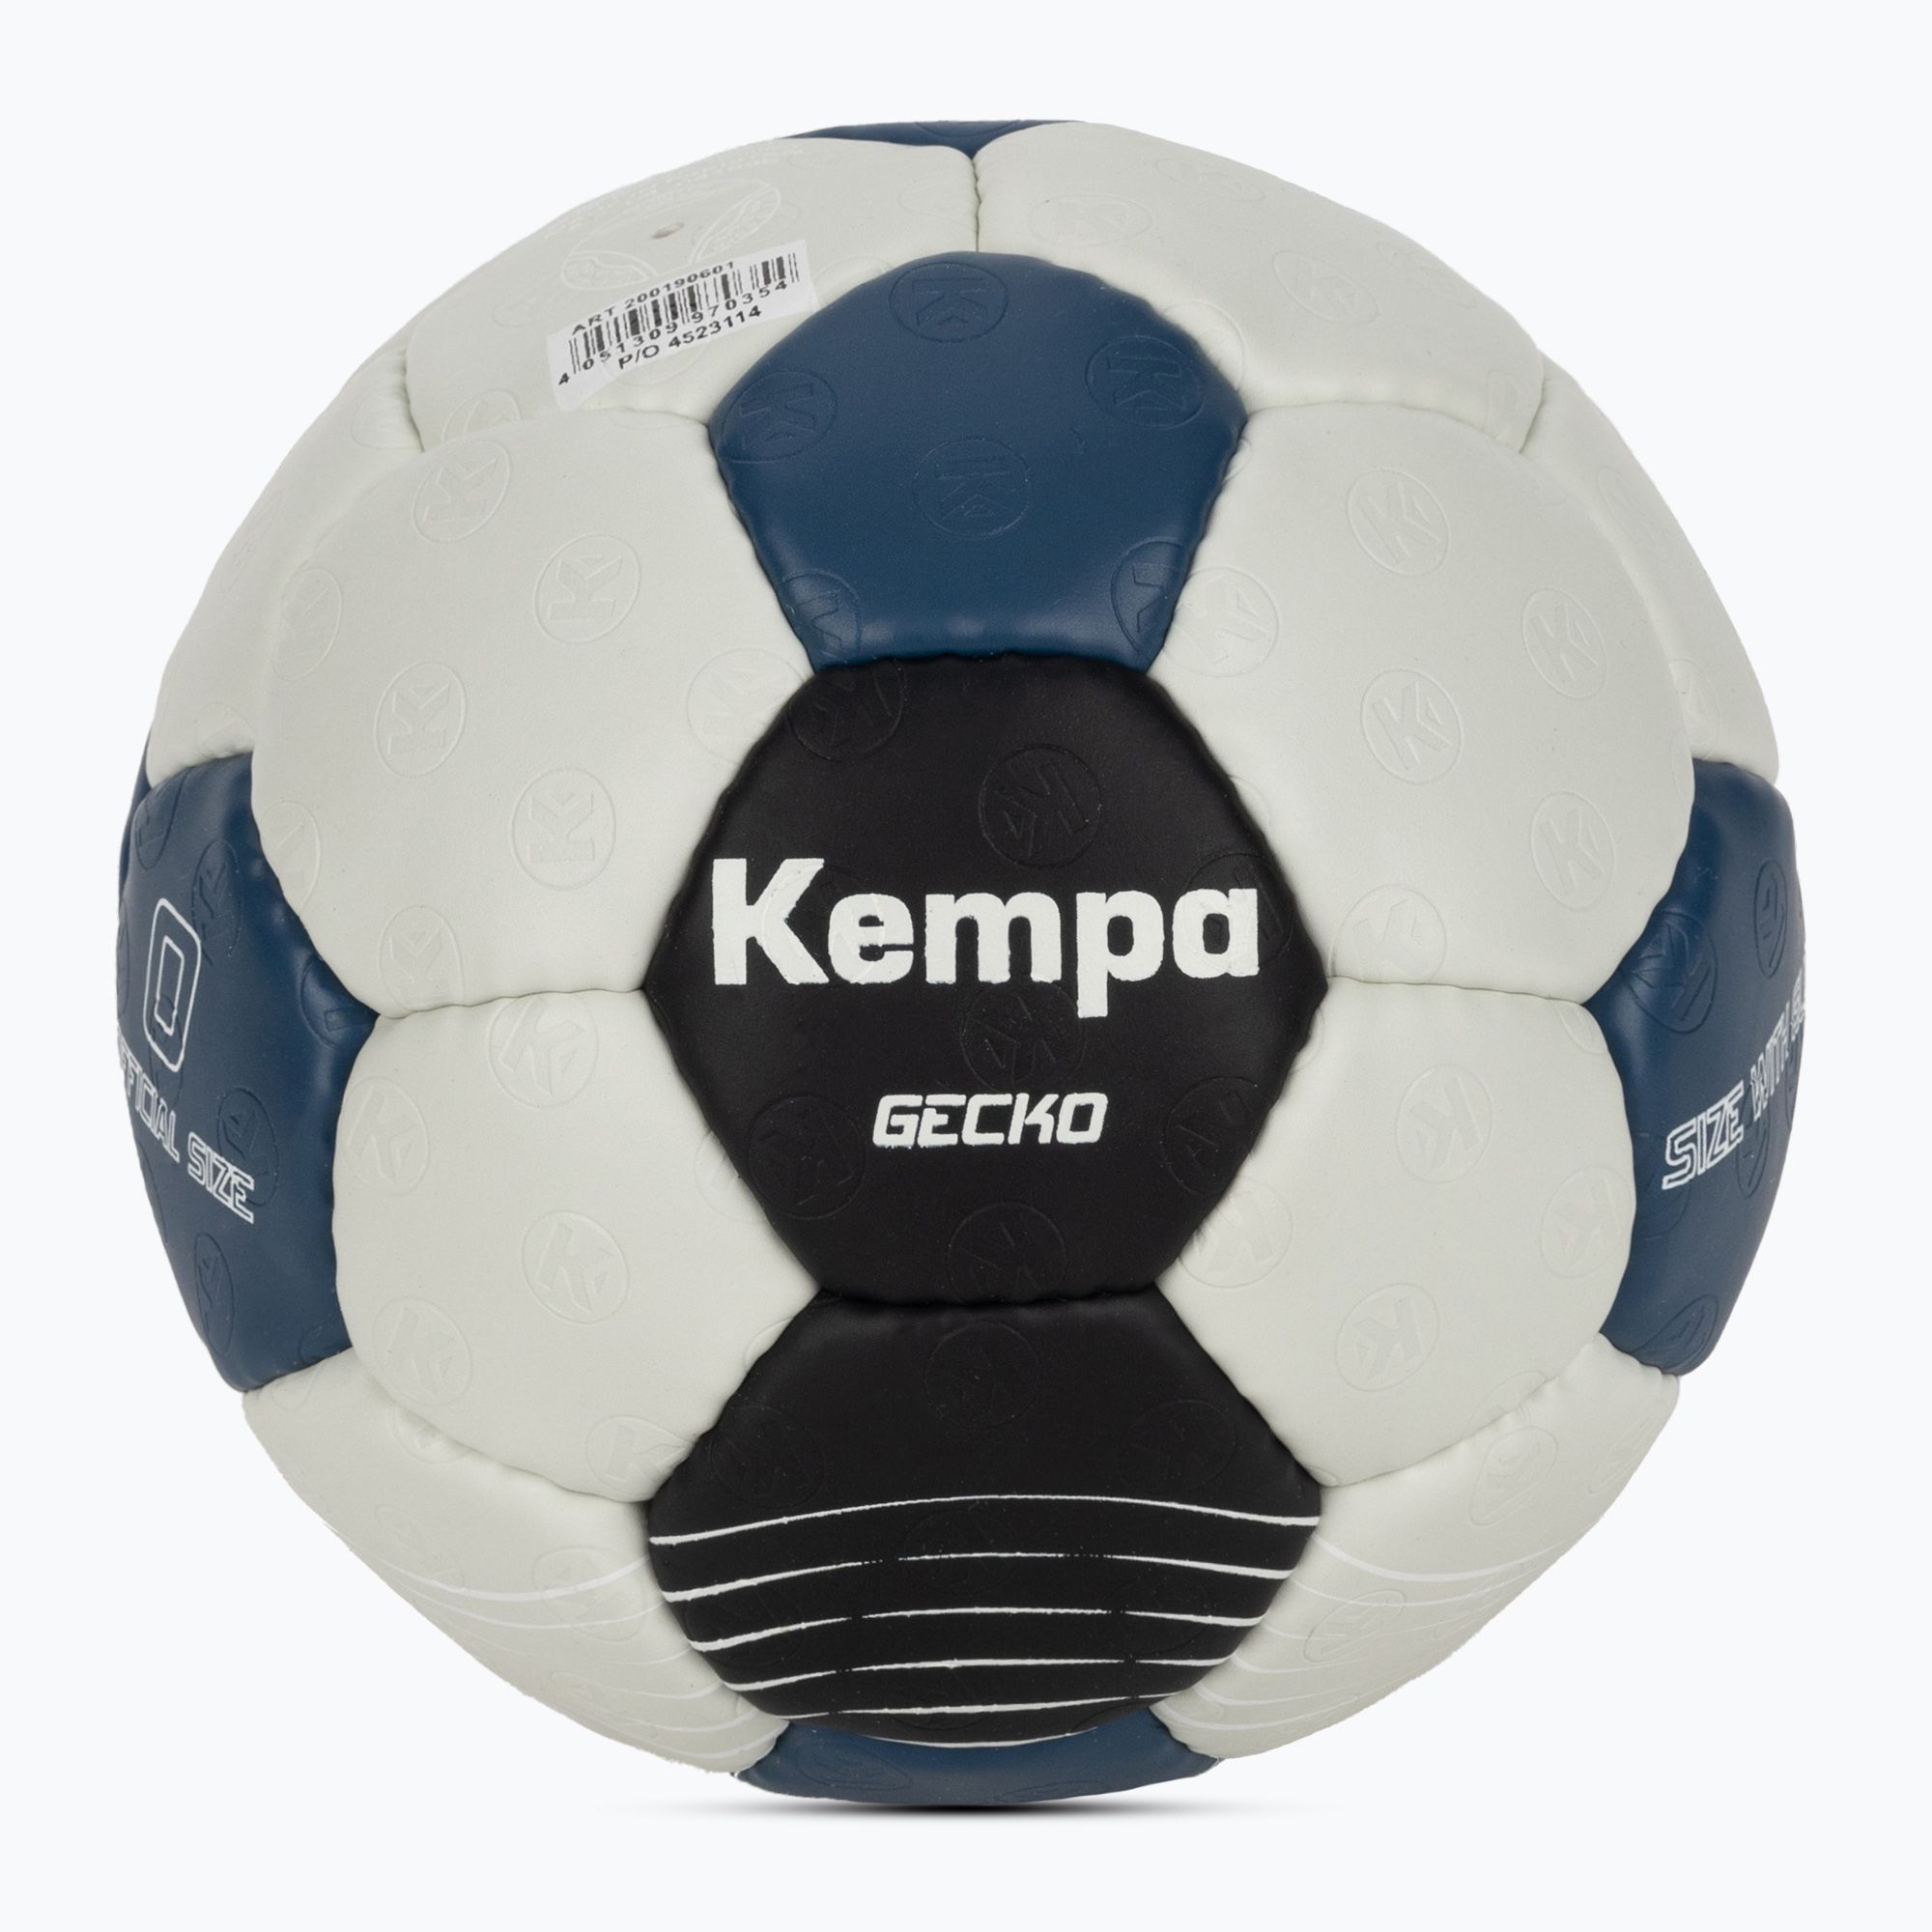 Piłka do piłki ręcznej Kempa Gecko szara/niebieska rozmiar 0